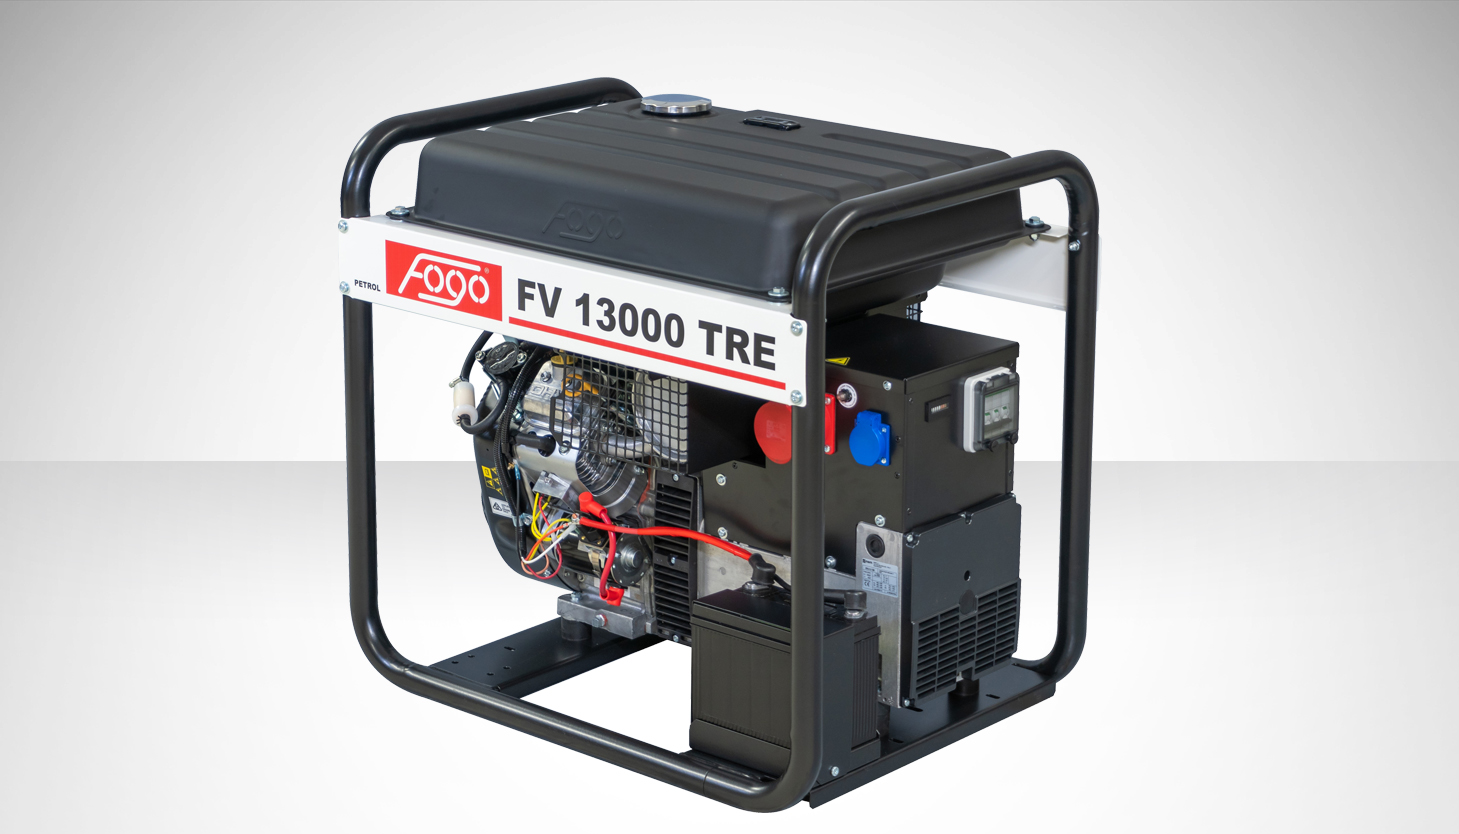 FOGO FV 13000 TRE Agregat prądotwórczy trójfazowy nr katalogowy 29458